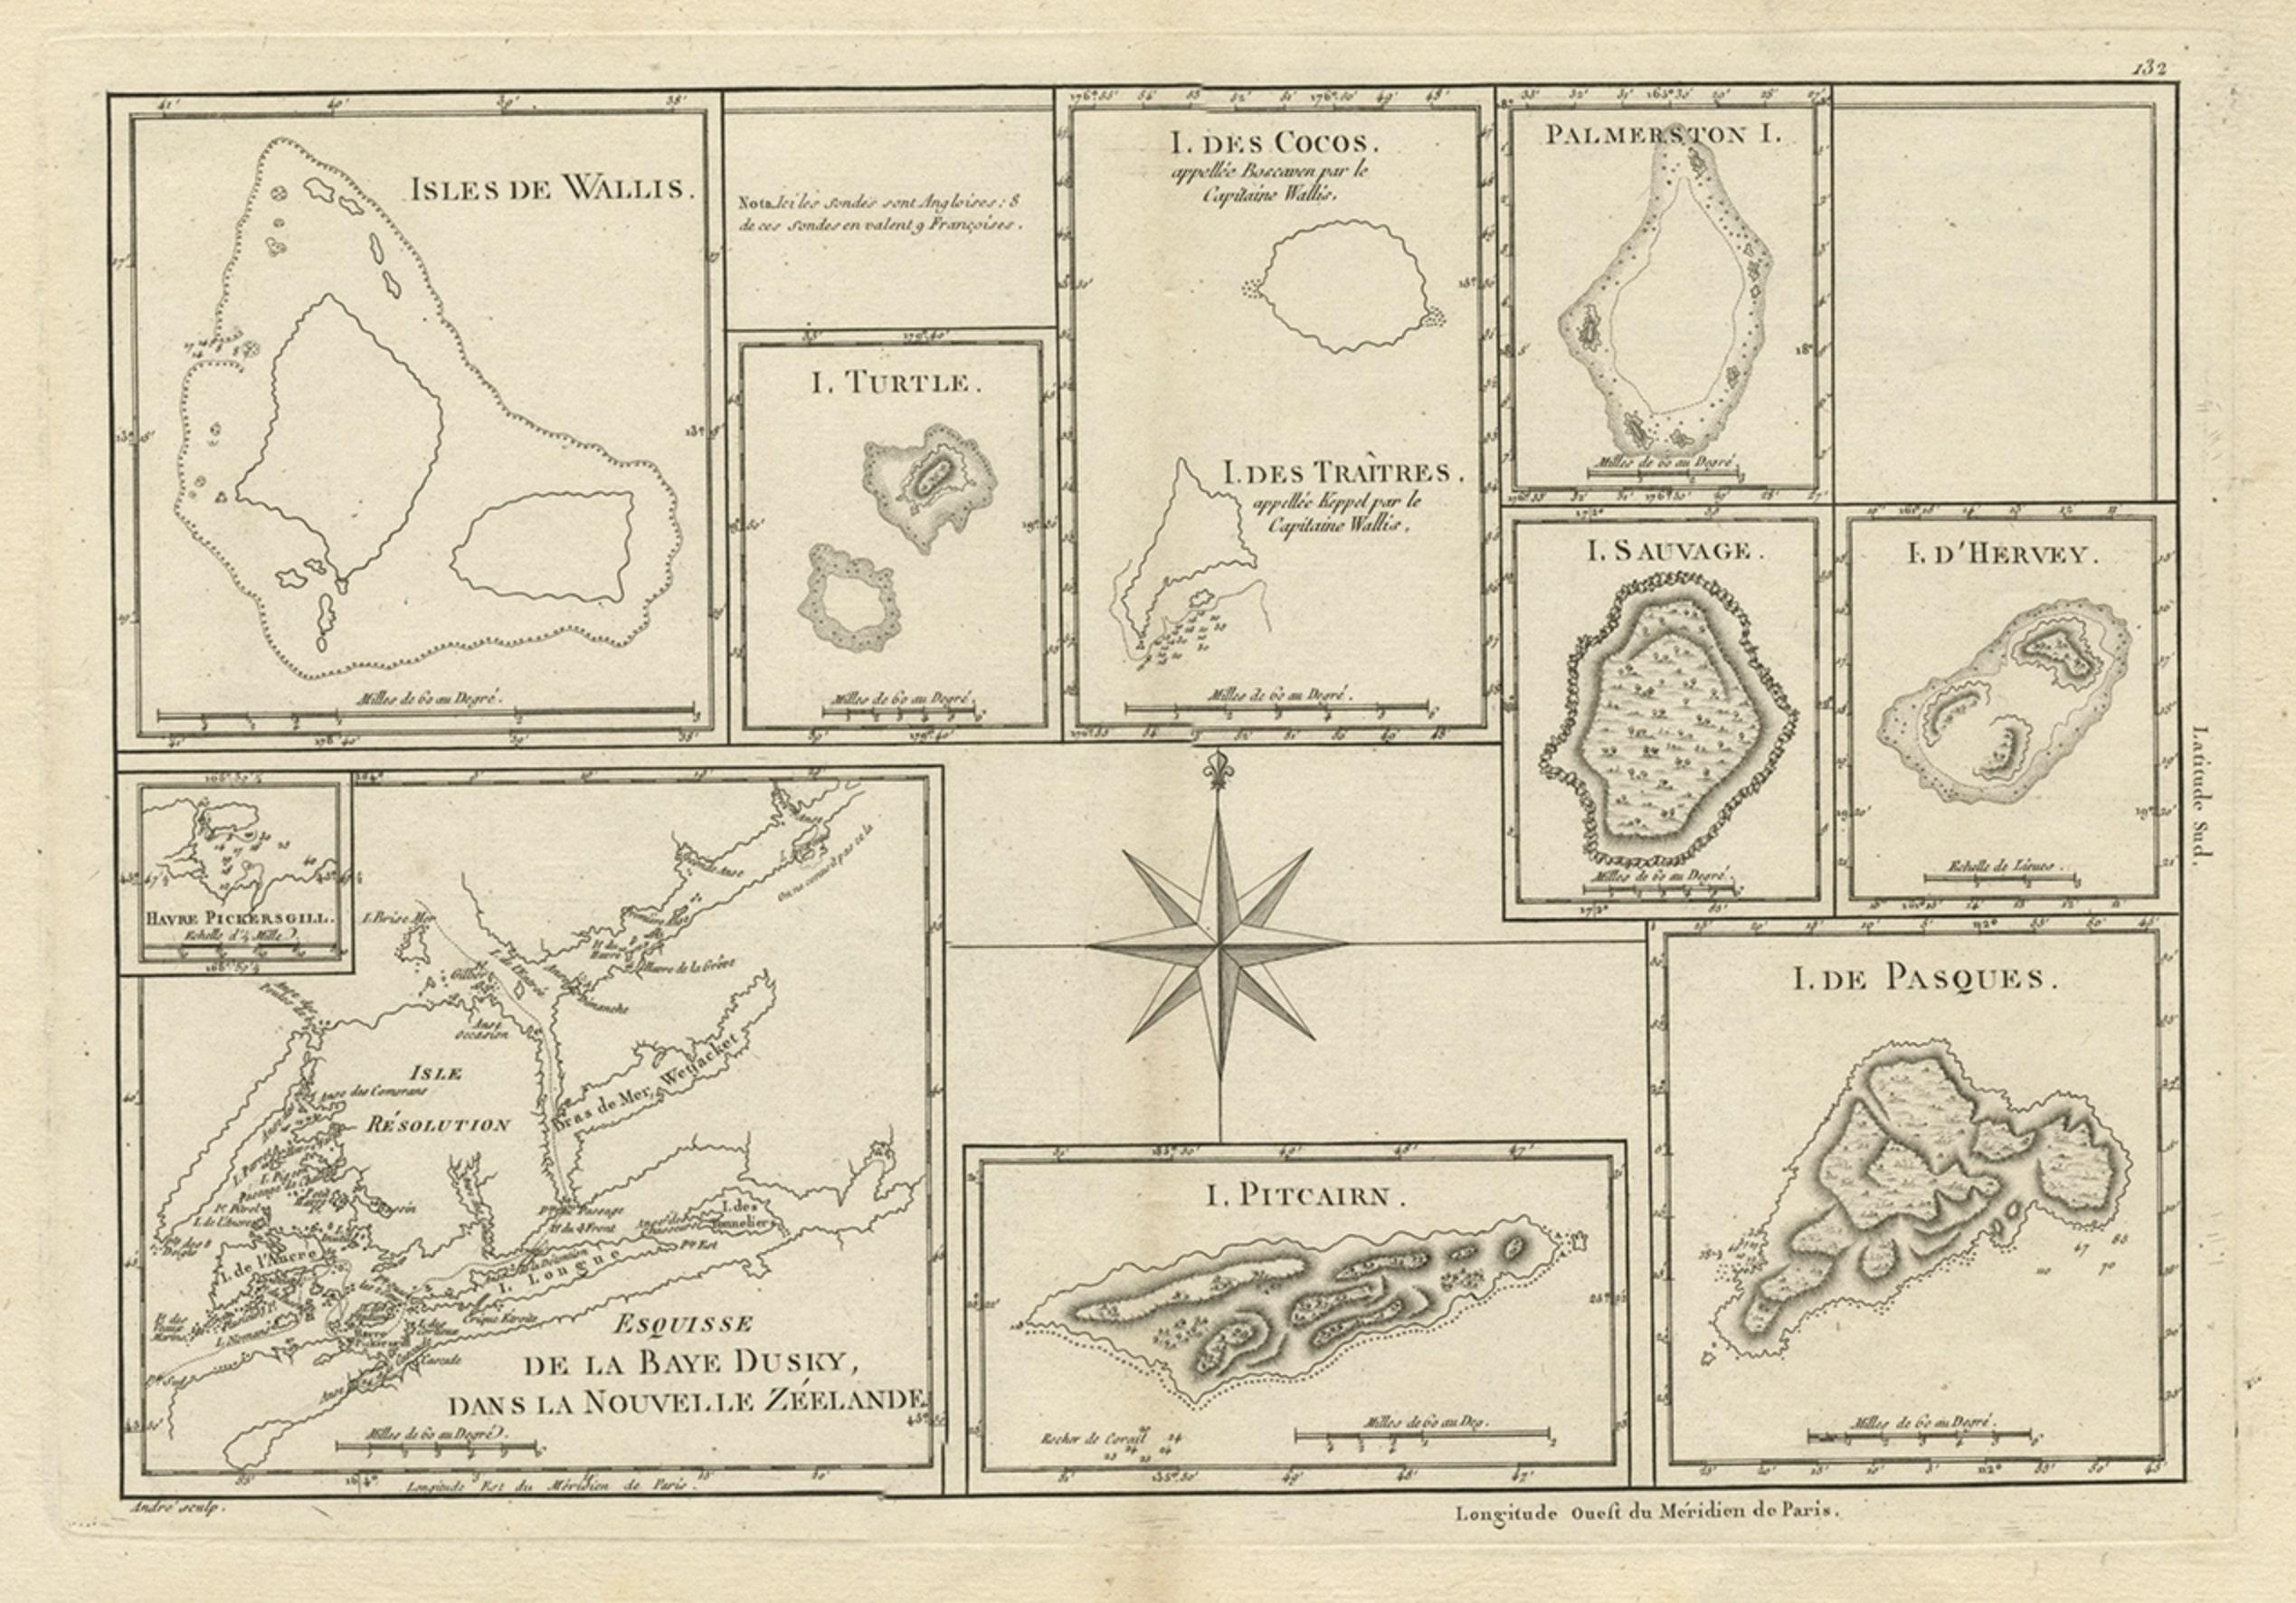 Antique map titled 'Esquisse de la Bay Dusky, Dans La Nouvelle Zeelande / I. Pitcairn / Isles de Wallis / I Turtle / I des Cocos and Traitres / Palmerston I. / I. Suavage / I. D'Hervey/ Havre Pickersgill / I de Pasques.' 

Detailed set of maps of